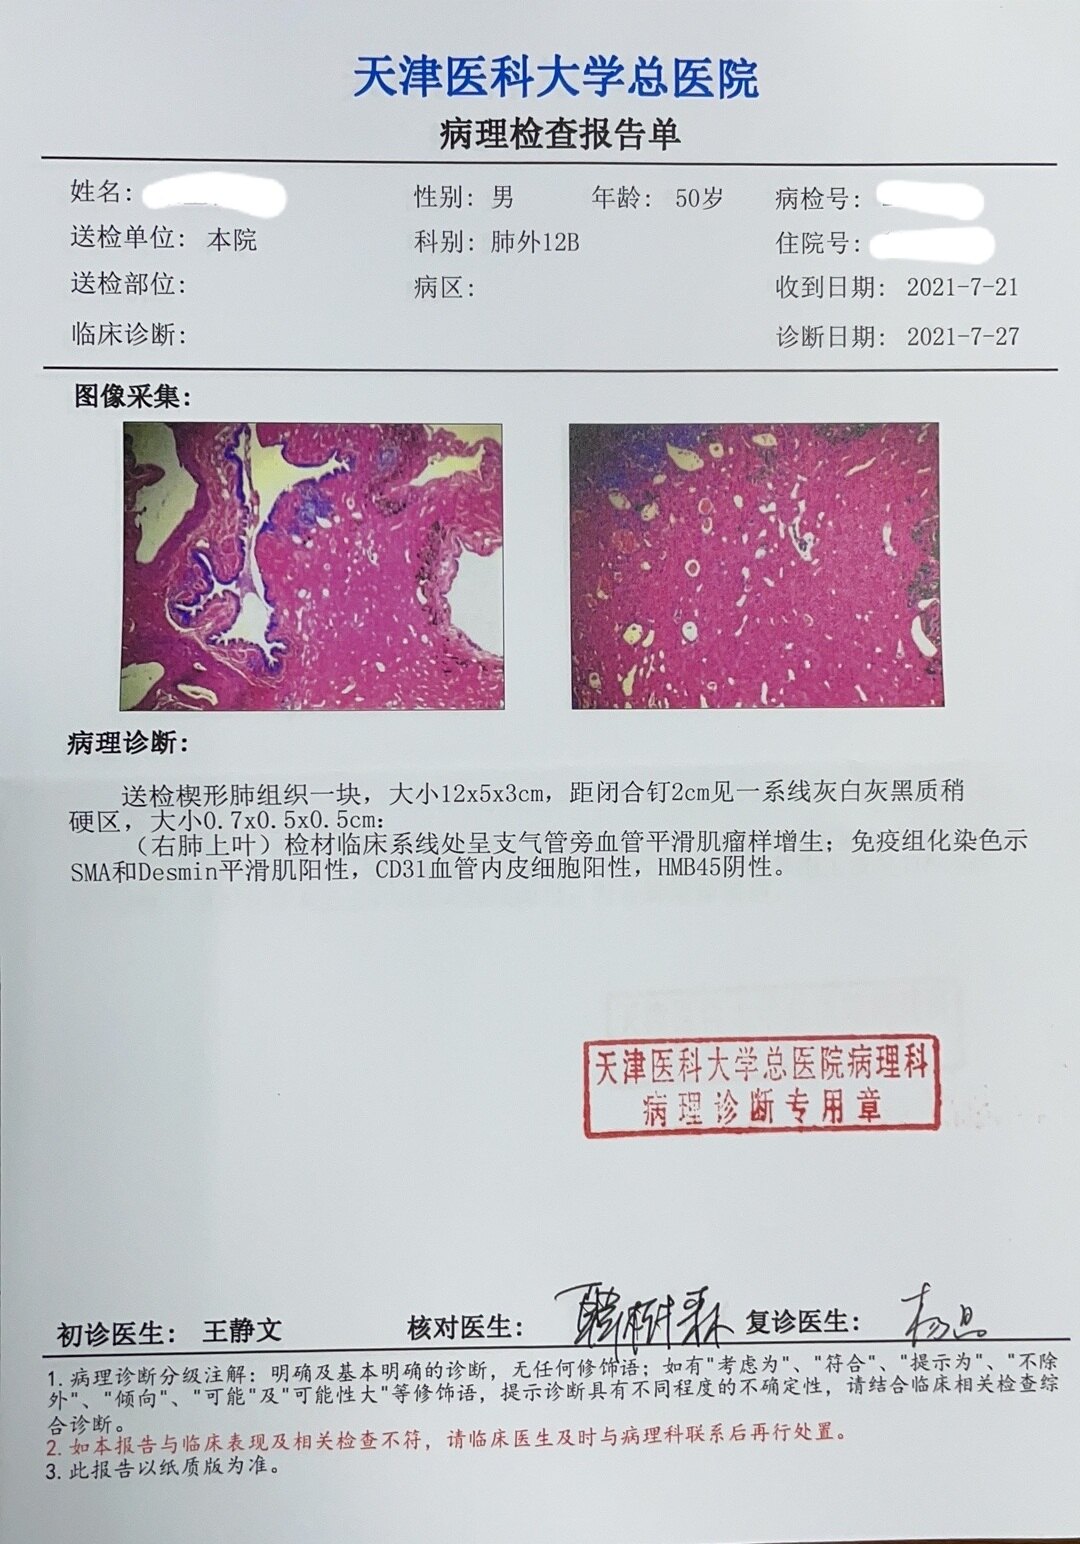 刘懿博士说肺癌二亖一六9毫米肺结节形态不规则一定是肺癌么